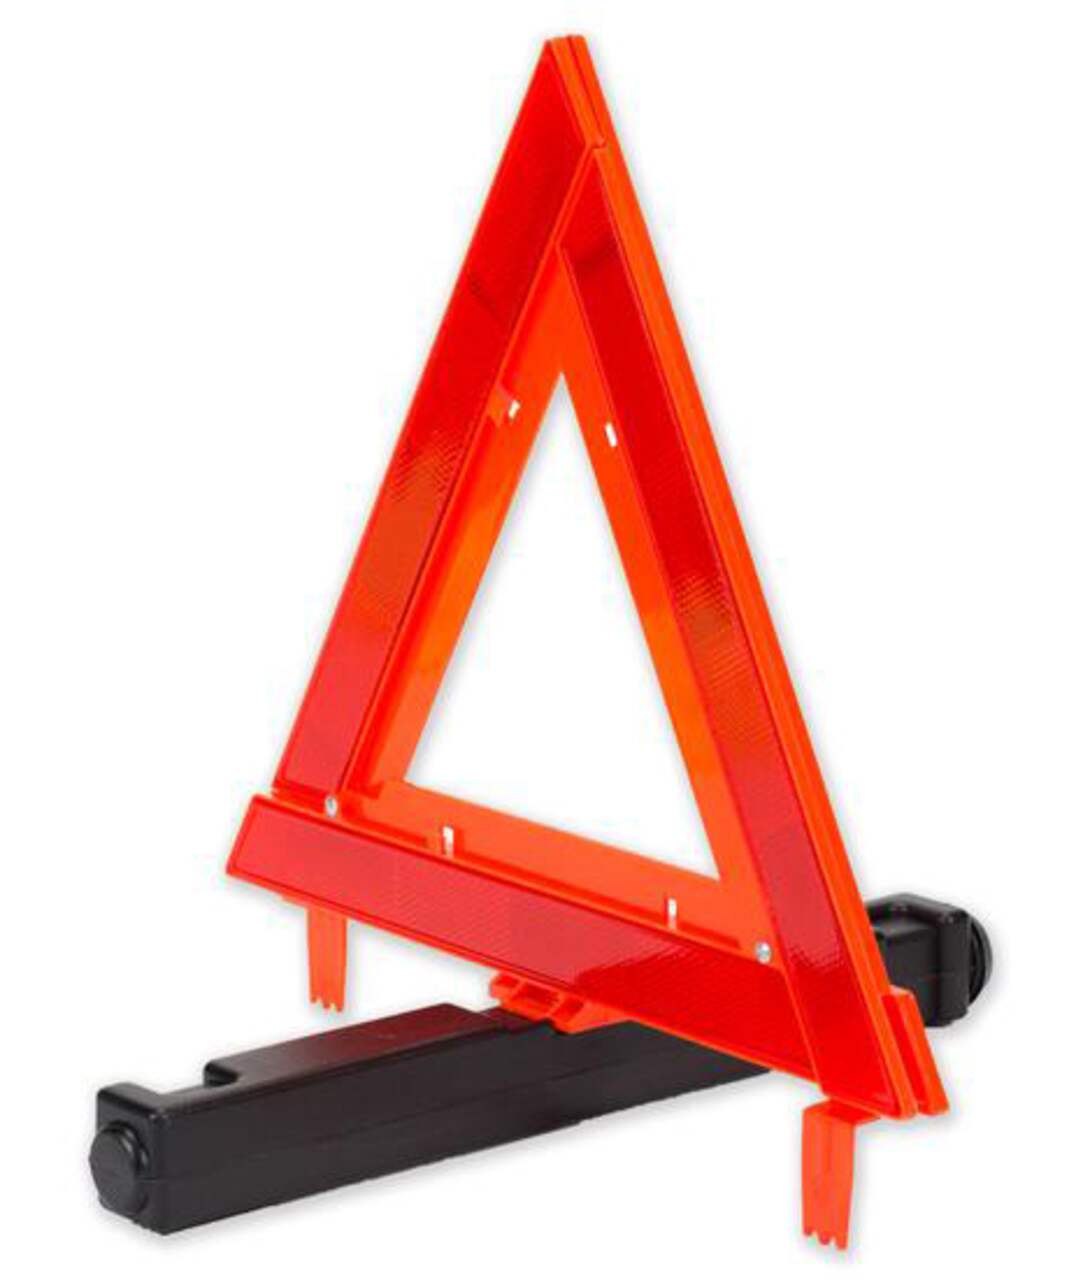 Acheter un triangle de signalisation pour voiture: le guide